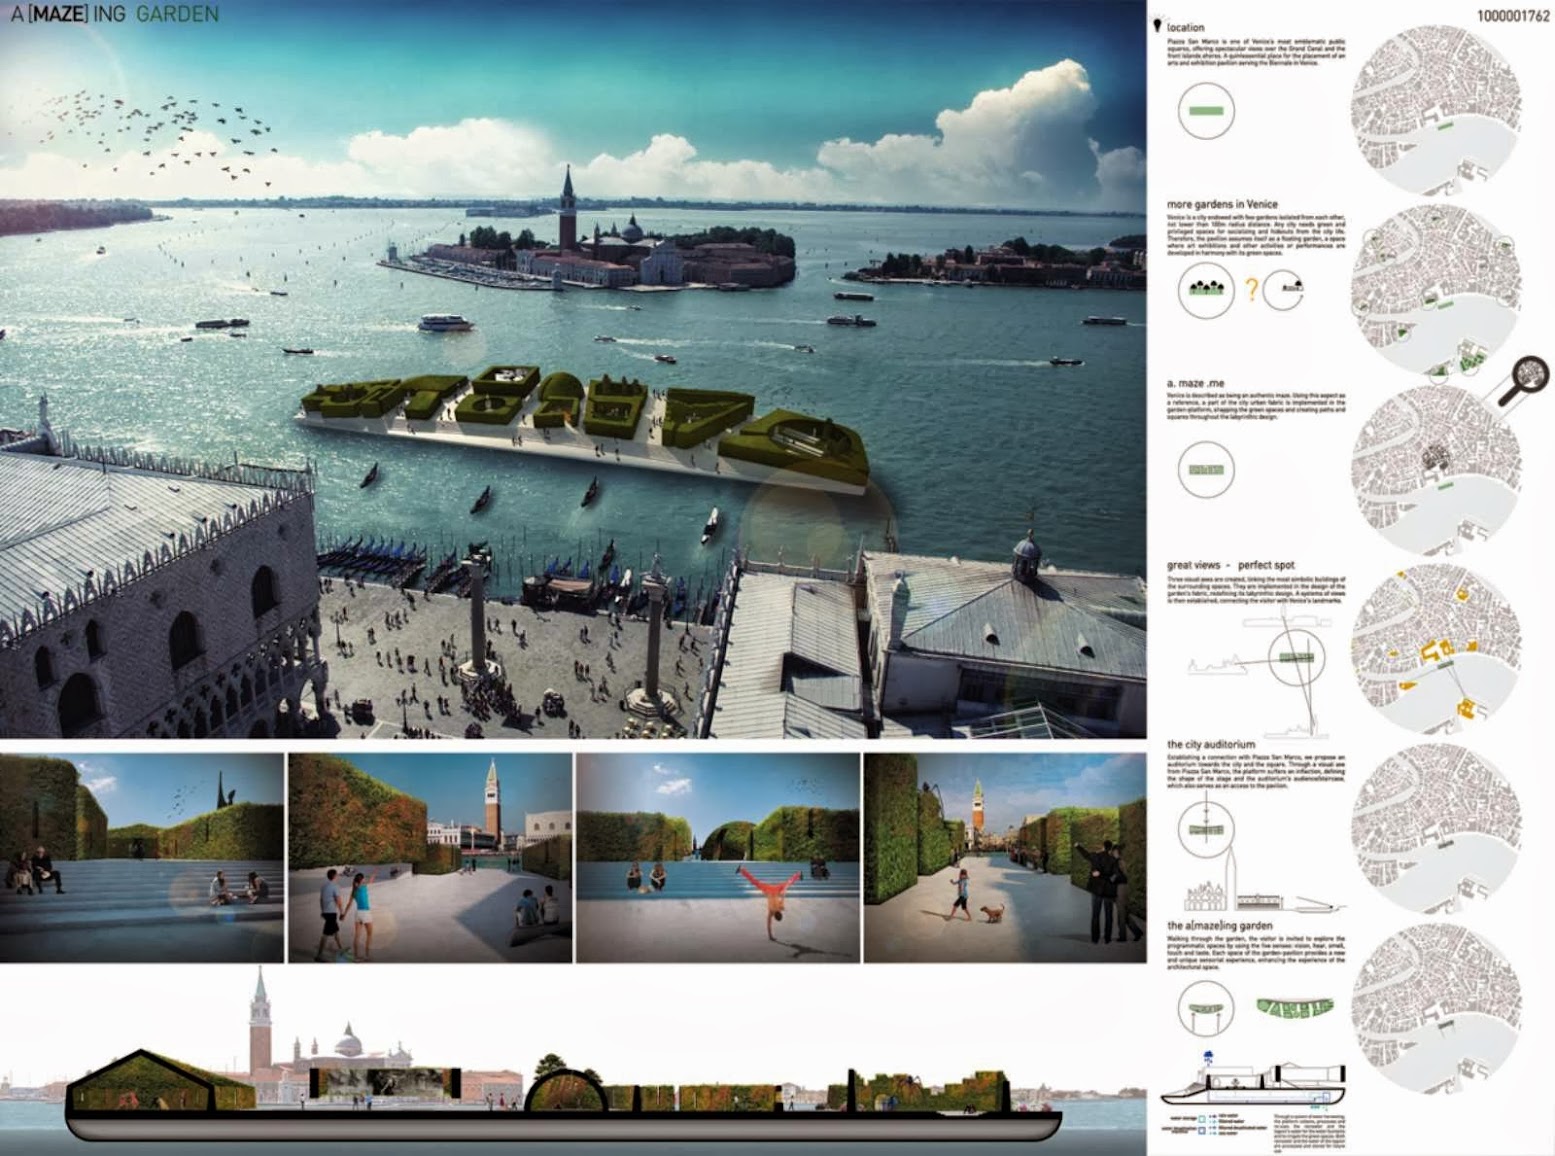 ArchTriumph Venice Biennale Pavilion 2013 Competition Winners